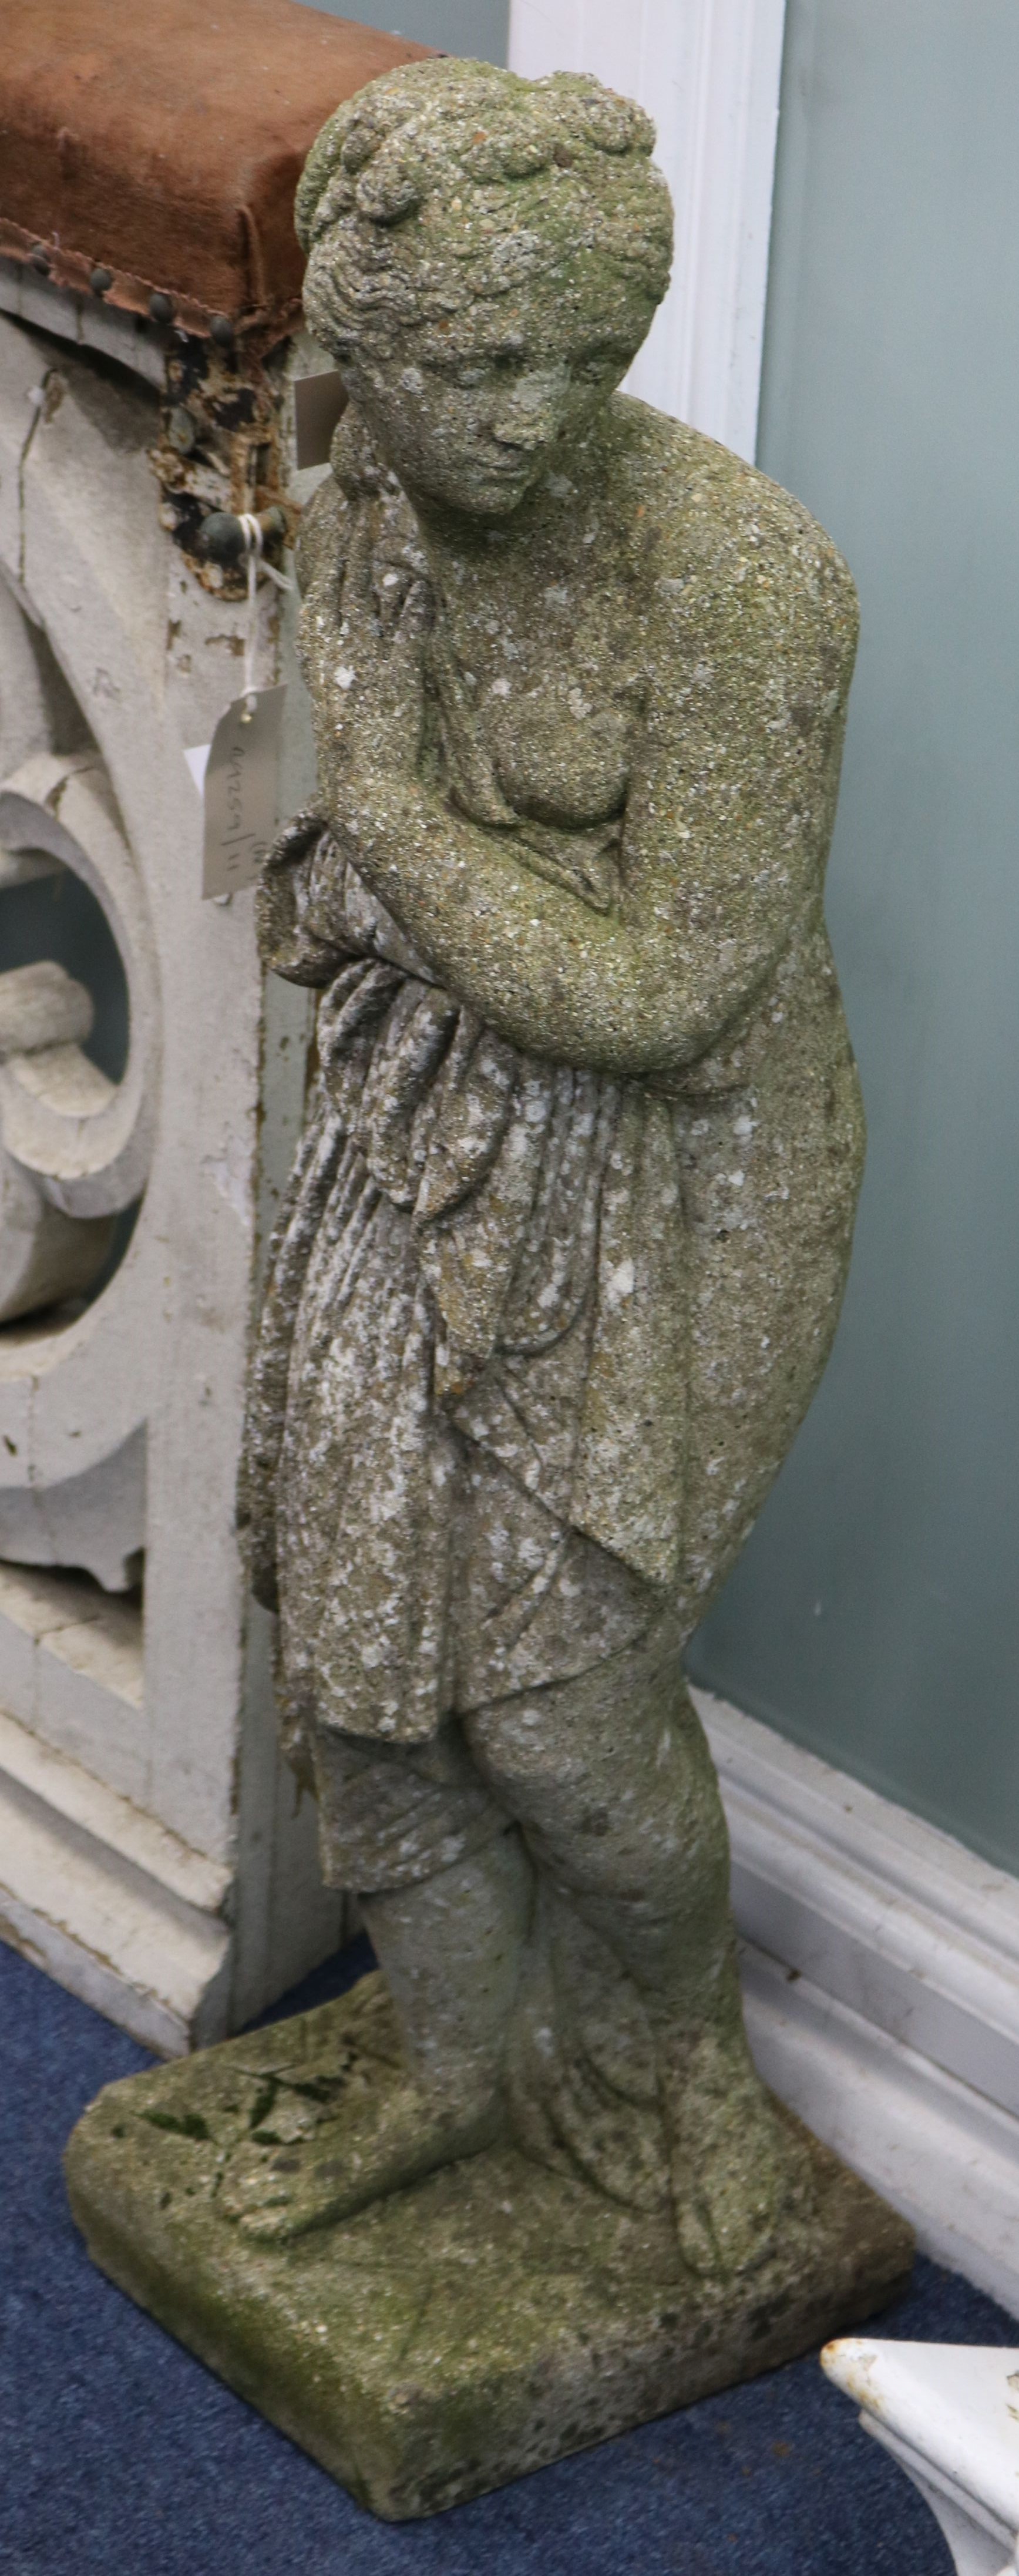 A reconstituted stone figure - Venus surprised W.21cm